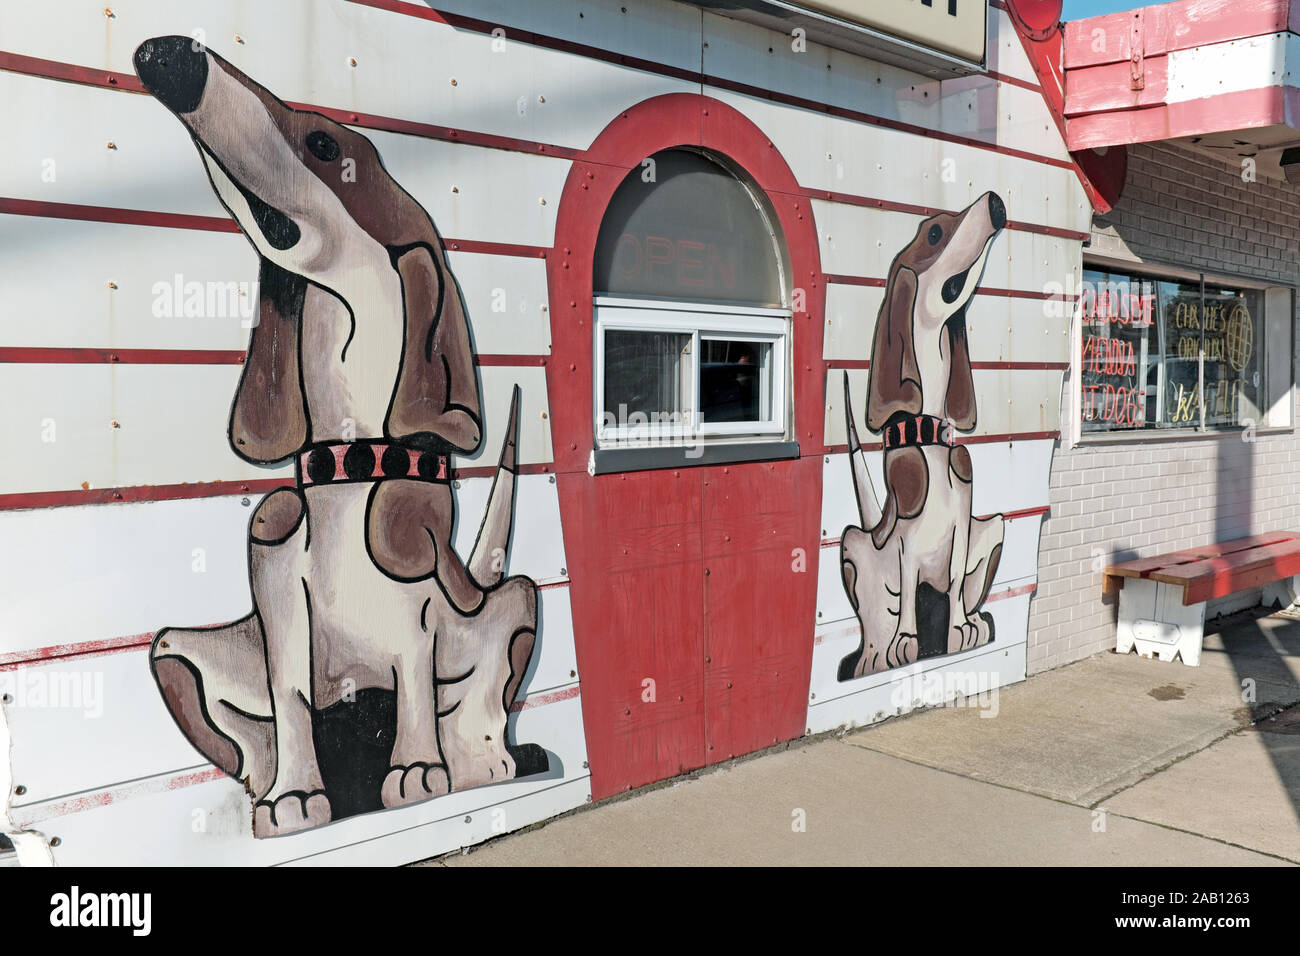 Charlie's Dog House Diner, auch als Charlie's Restaurant bekannt, ist eine retro Americana Diner auf brookpark Straße in Cleveland, Ohio, USA. Stockfoto